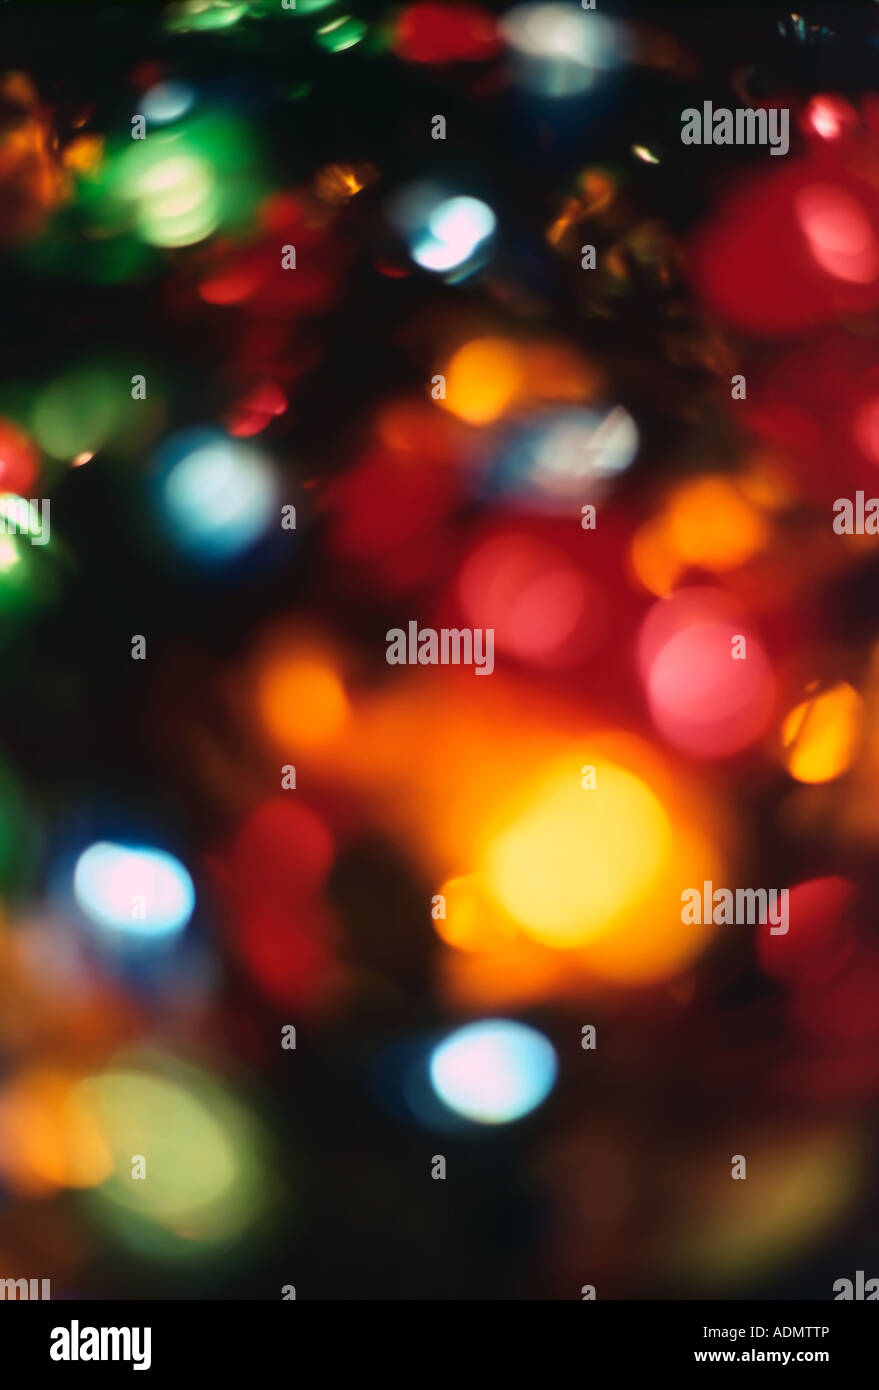 Al di fuori della messa a fuoco, multi-colore luci di Natale su un albero compongono questa vacanza meravigliosa astratta. Foto Stock